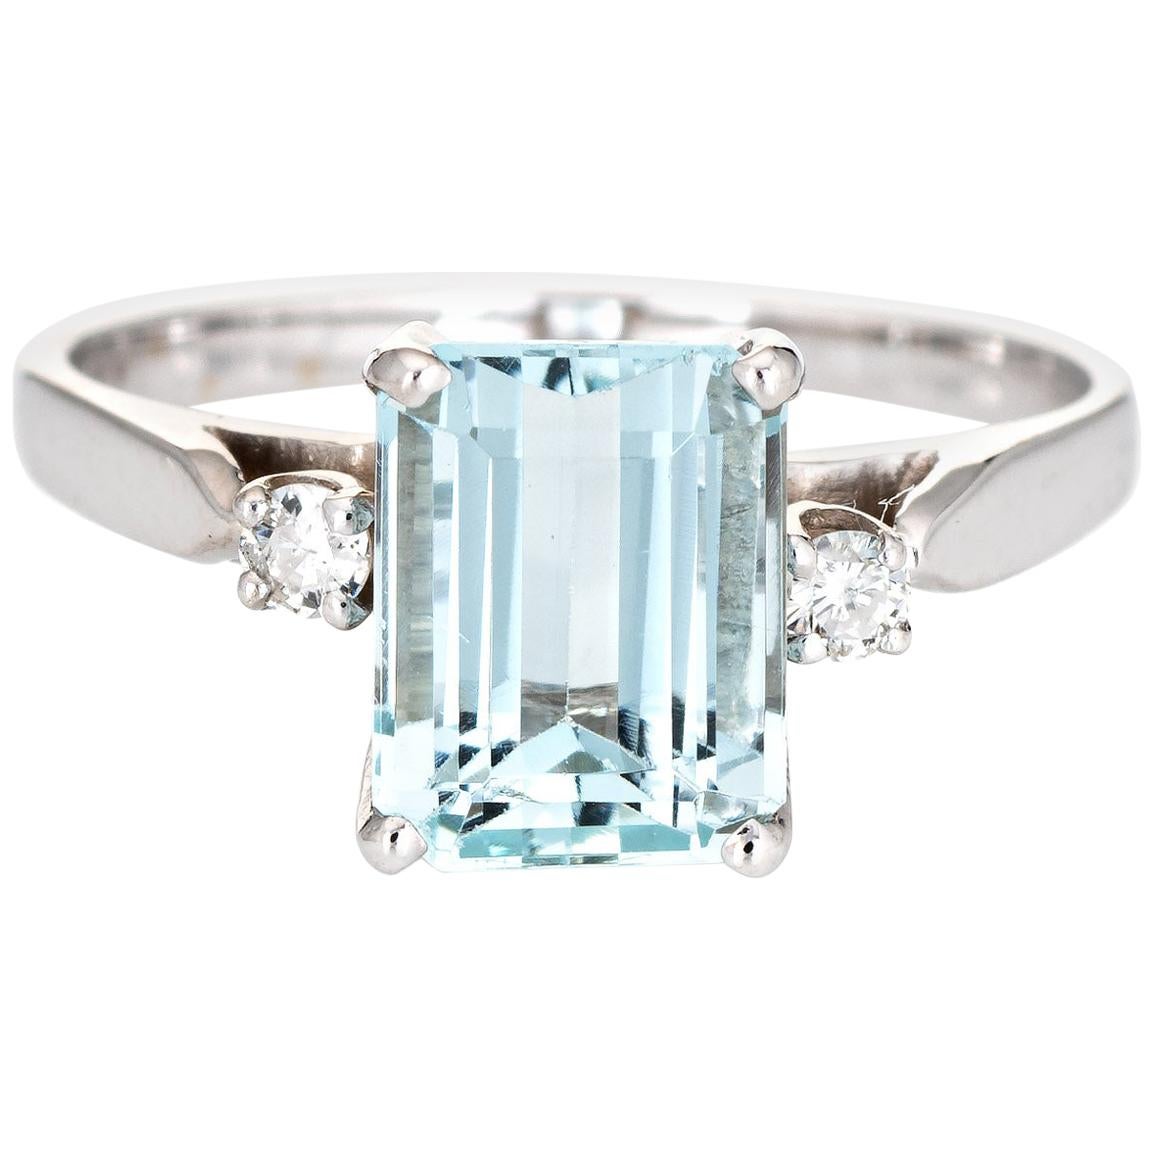 2.65 Carat Aquamarine Diamond Ring Vintage 14 Karat White Gold Gemstone